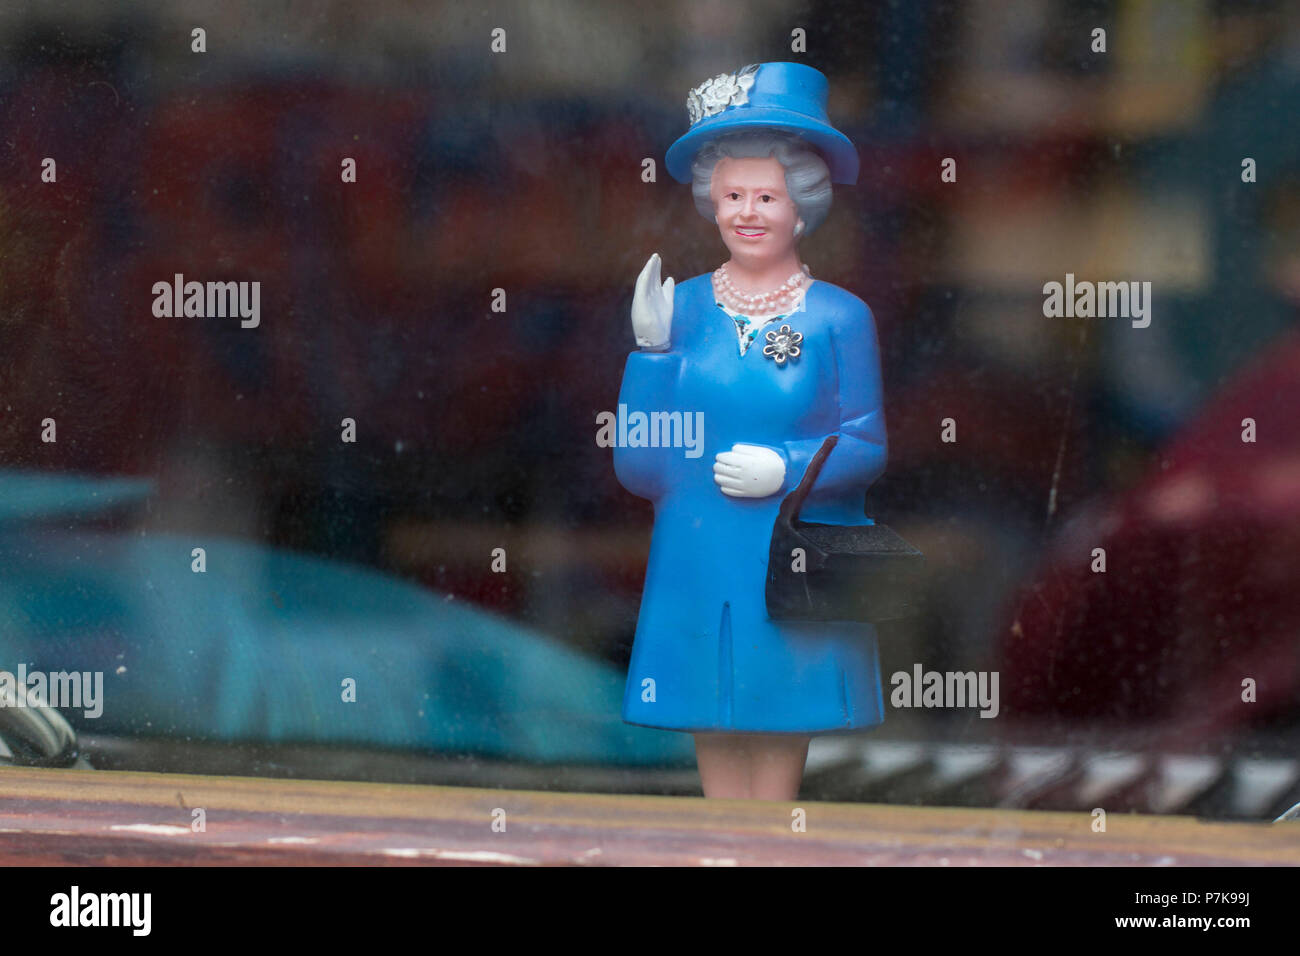 Winkende Monarchie, der englischen Königin als Puppe in einem Schaufenster  Stockfotografie - Alamy